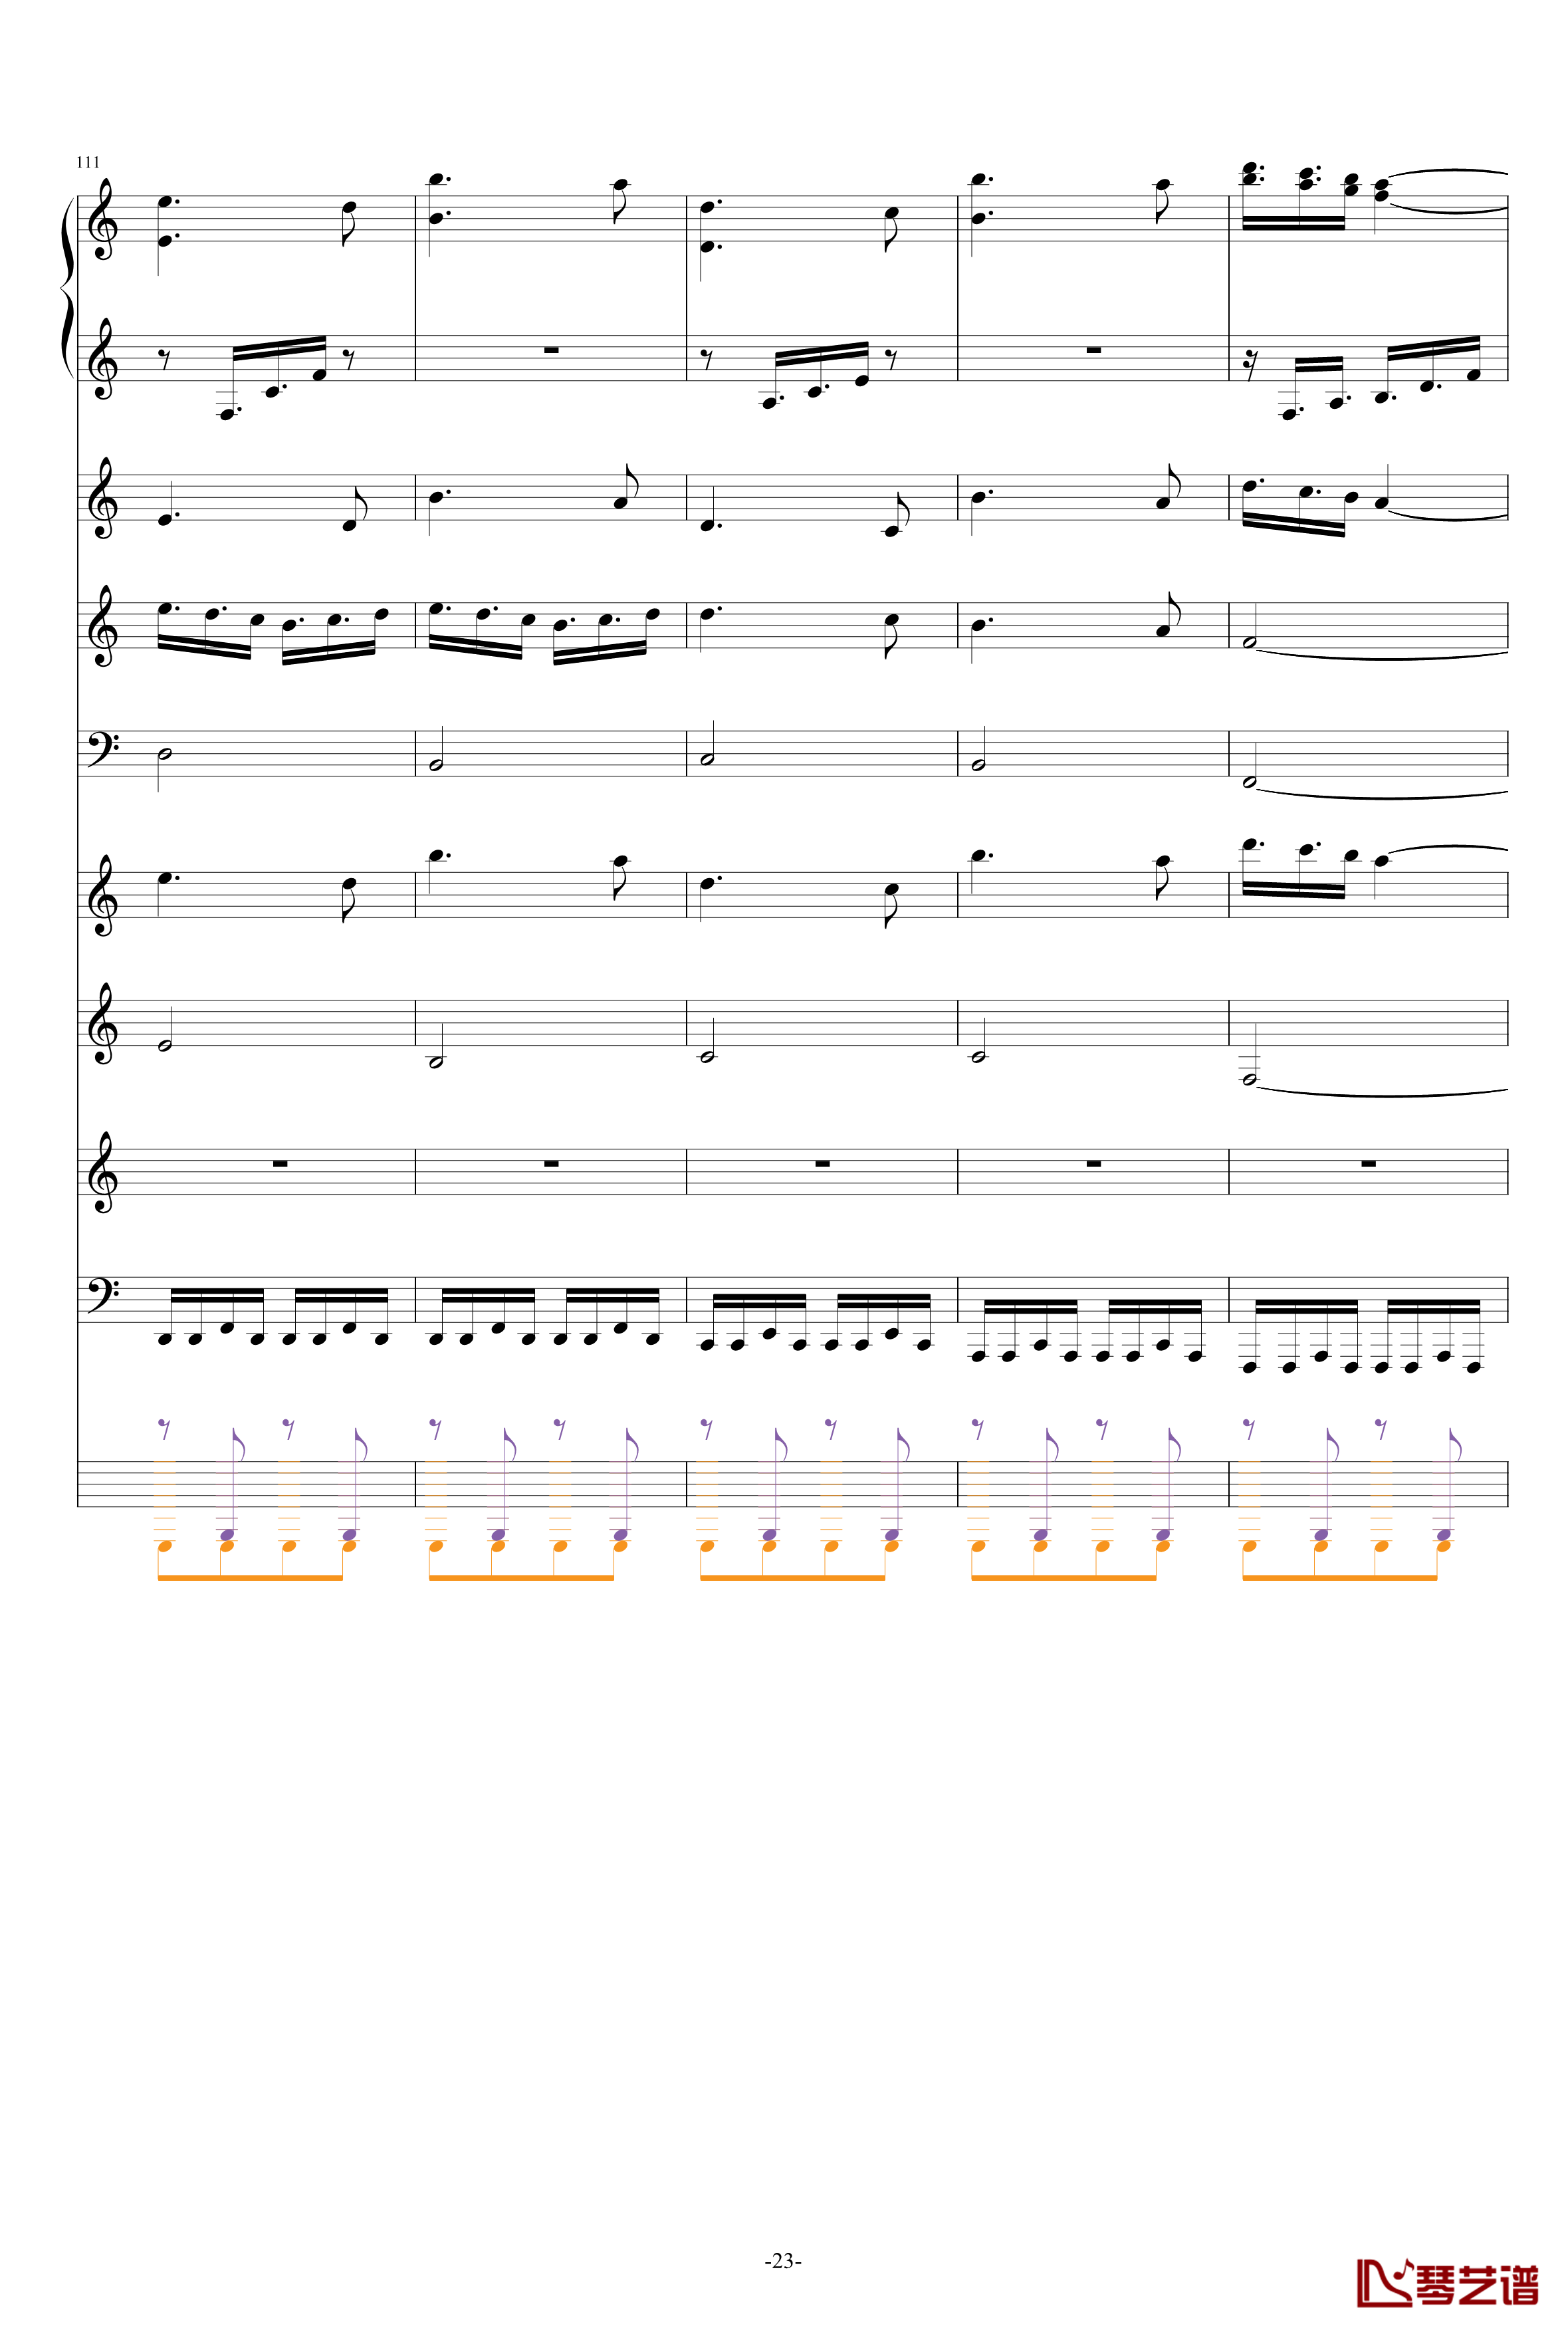 巴兰榭狂想曲钢琴谱-卓越之剑-总谱23